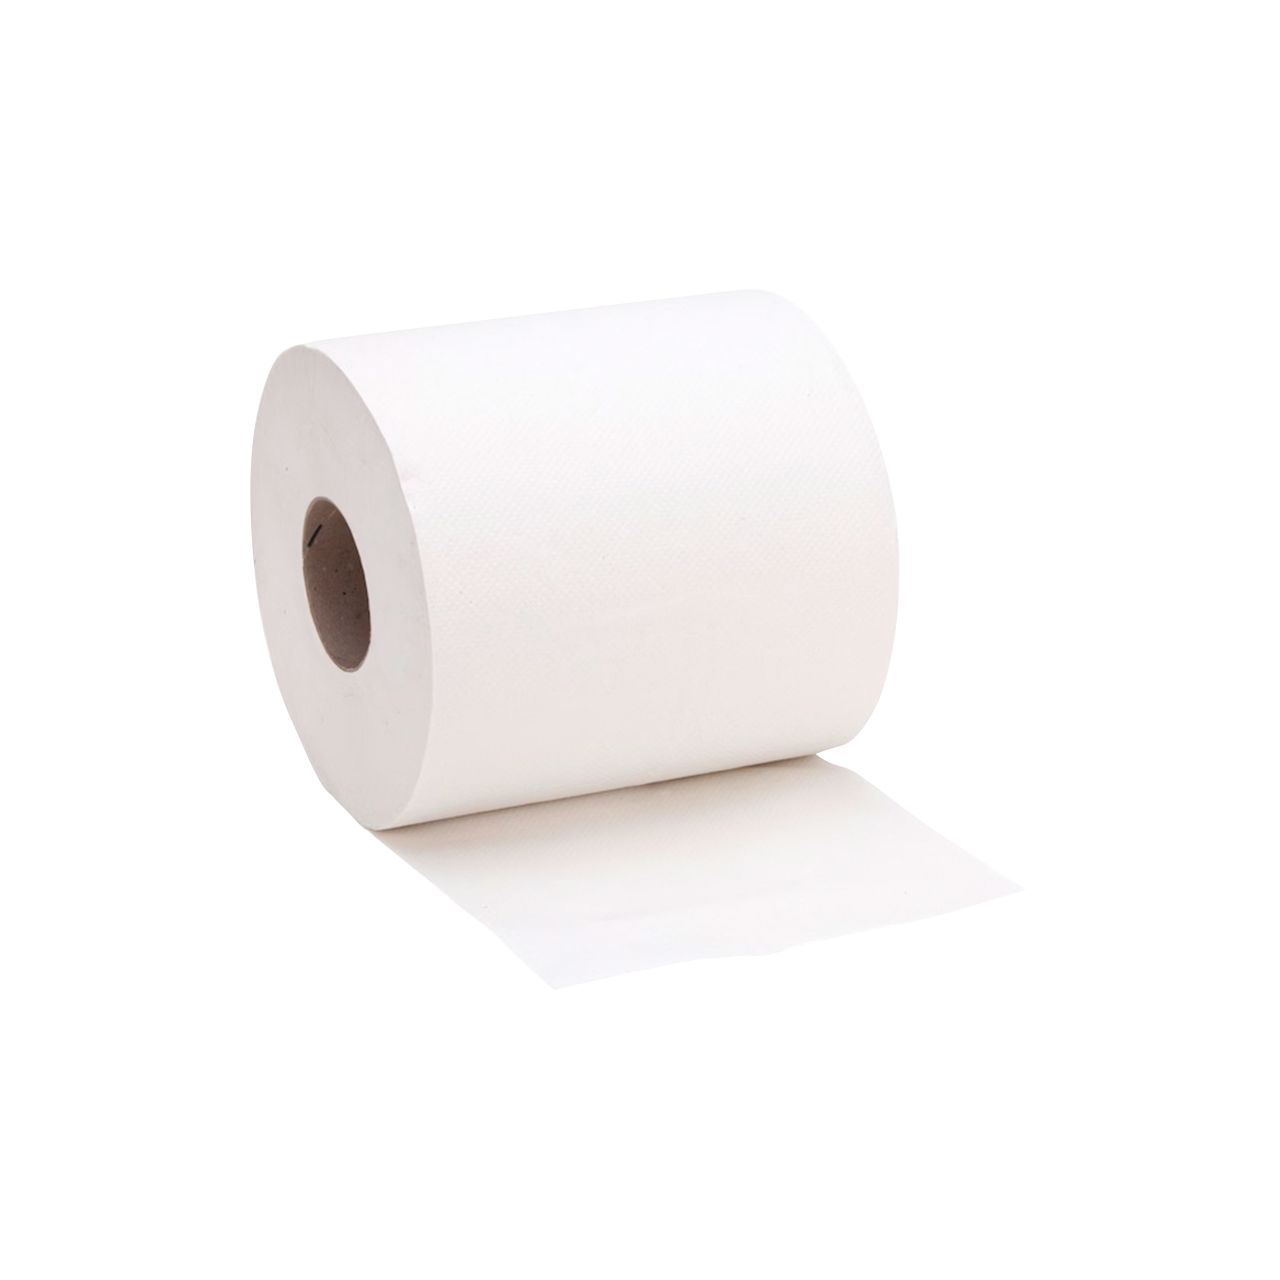 Putzpapier für Papierrollenhalter - weiß - Breite 205mm - Rollendurchmesser 200mm